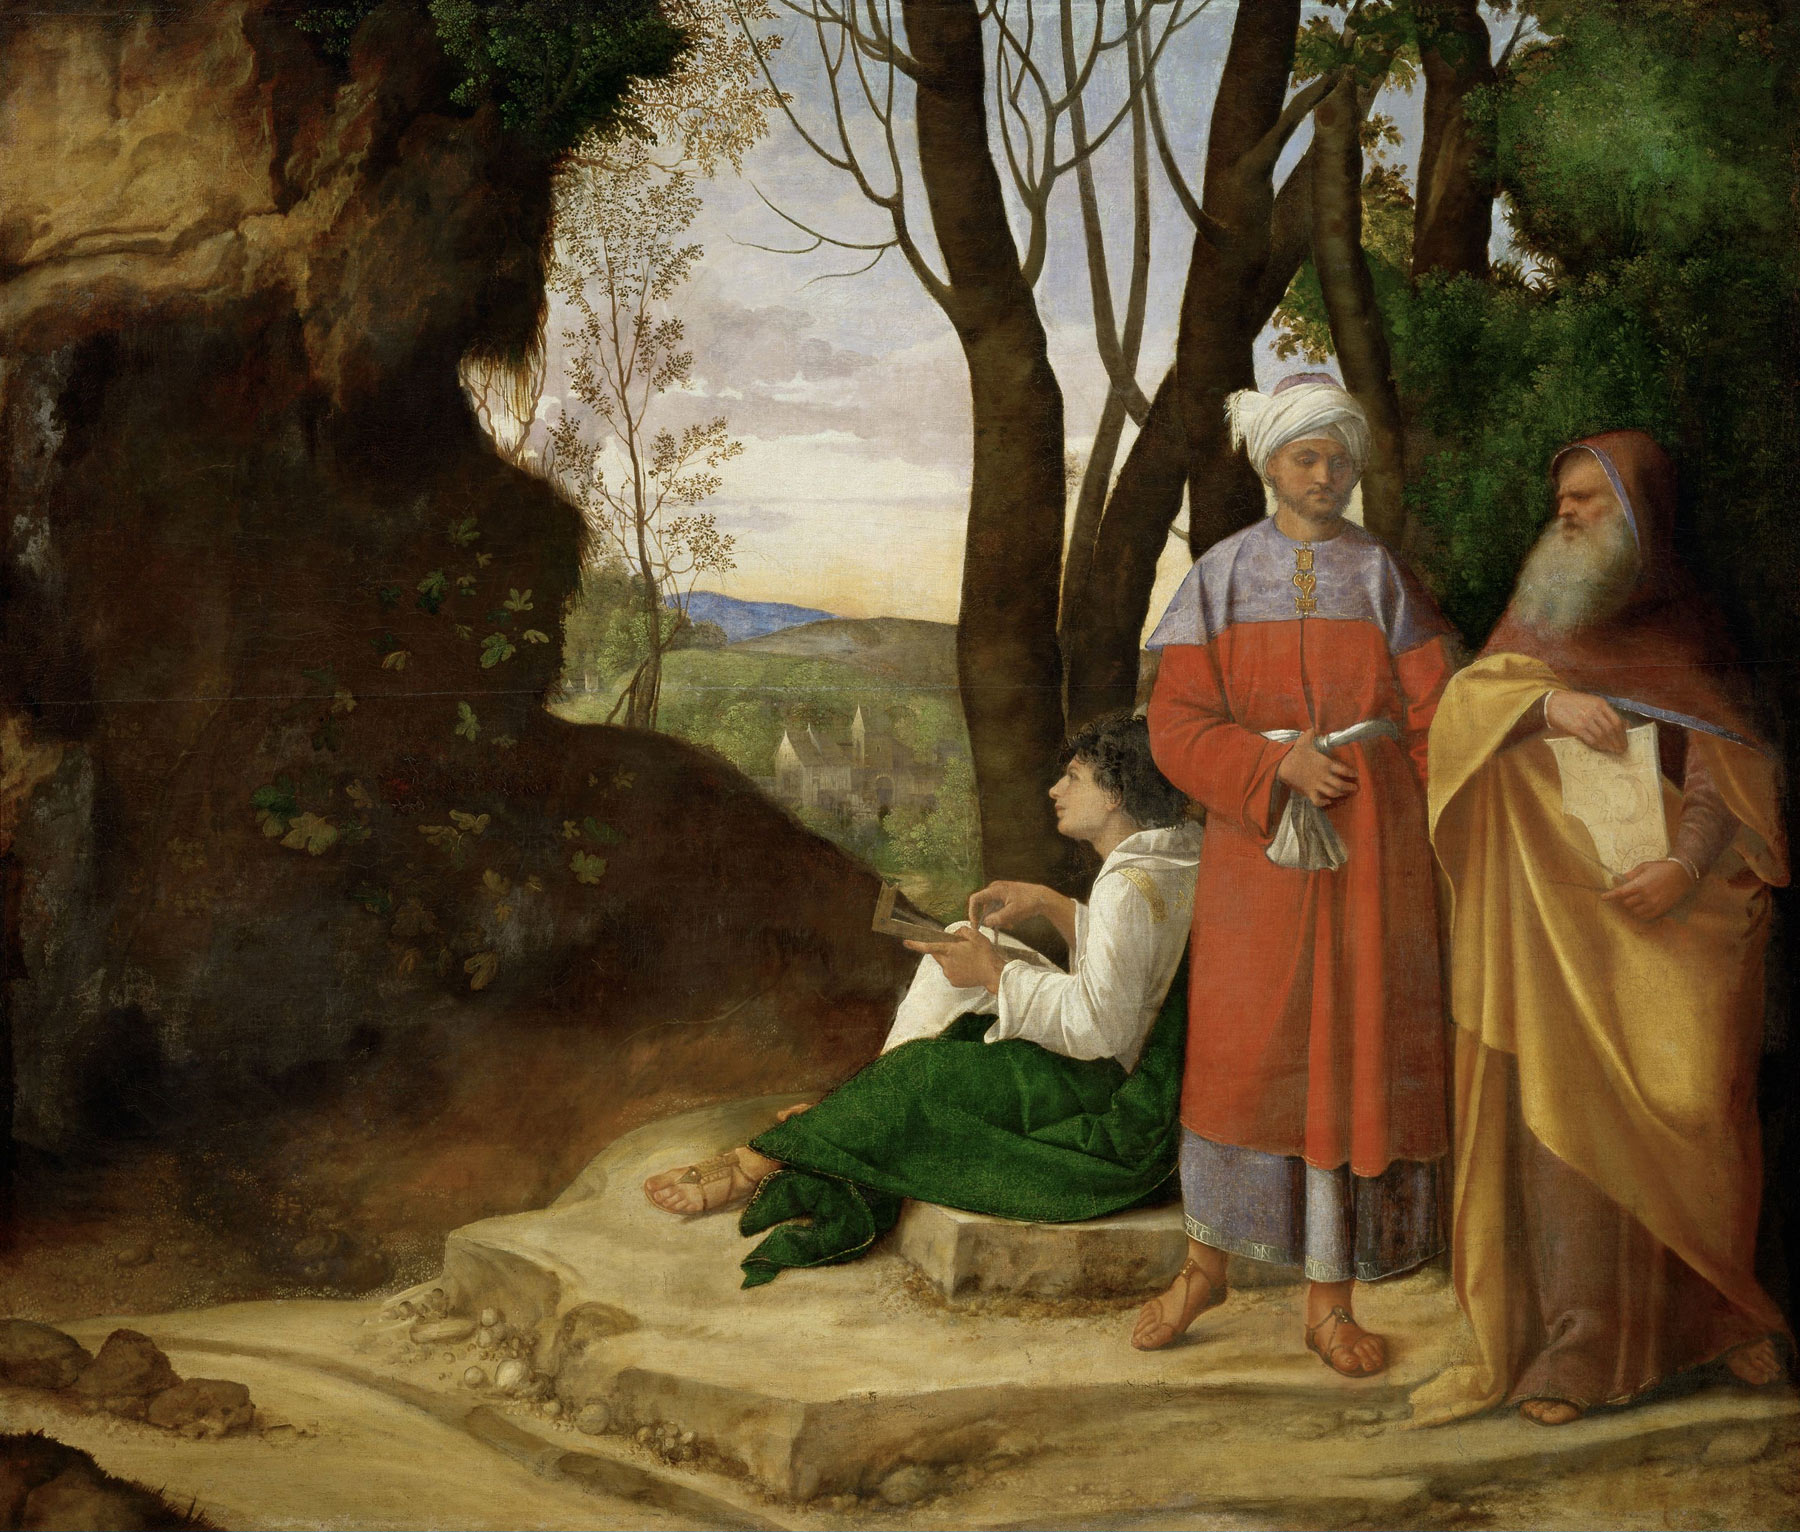 Giorgione (Giorgio Barbarelli?; Castelfranco Veneto, 1478 - Venezia, 1510), I tre filosofi (1506-1508 circa; olio su tela, 123,5 x 144,5 cm; Vienna, Kunsthistorisches Museum)